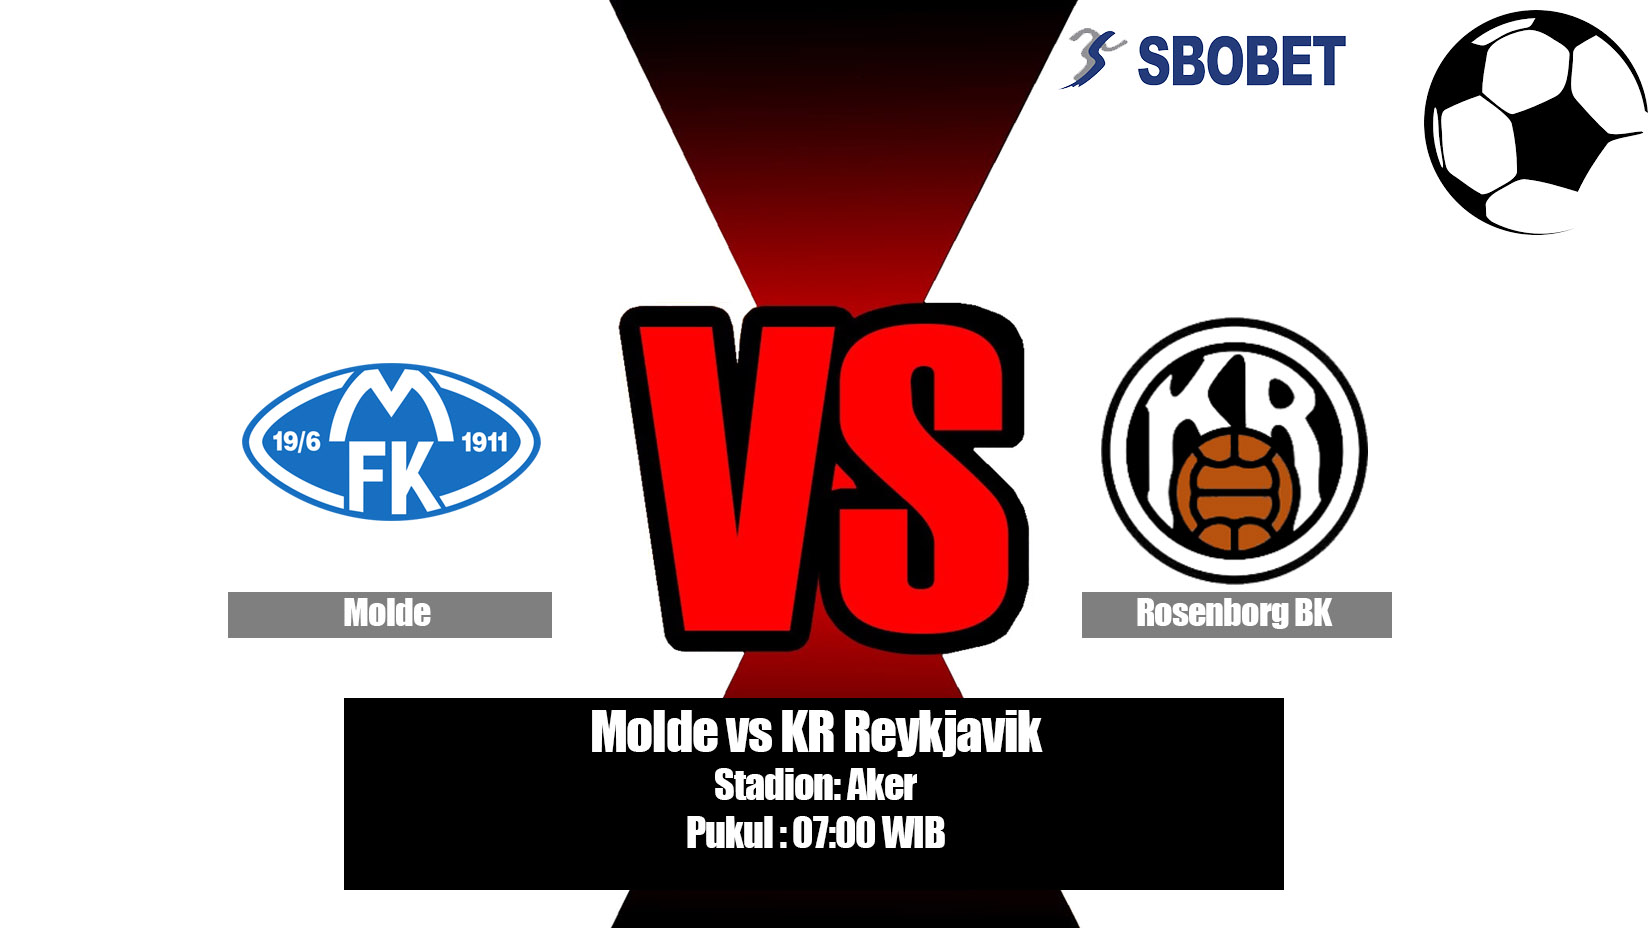 Prediksi Bola Molde vs KR Reykjavik 12 Juli 2019